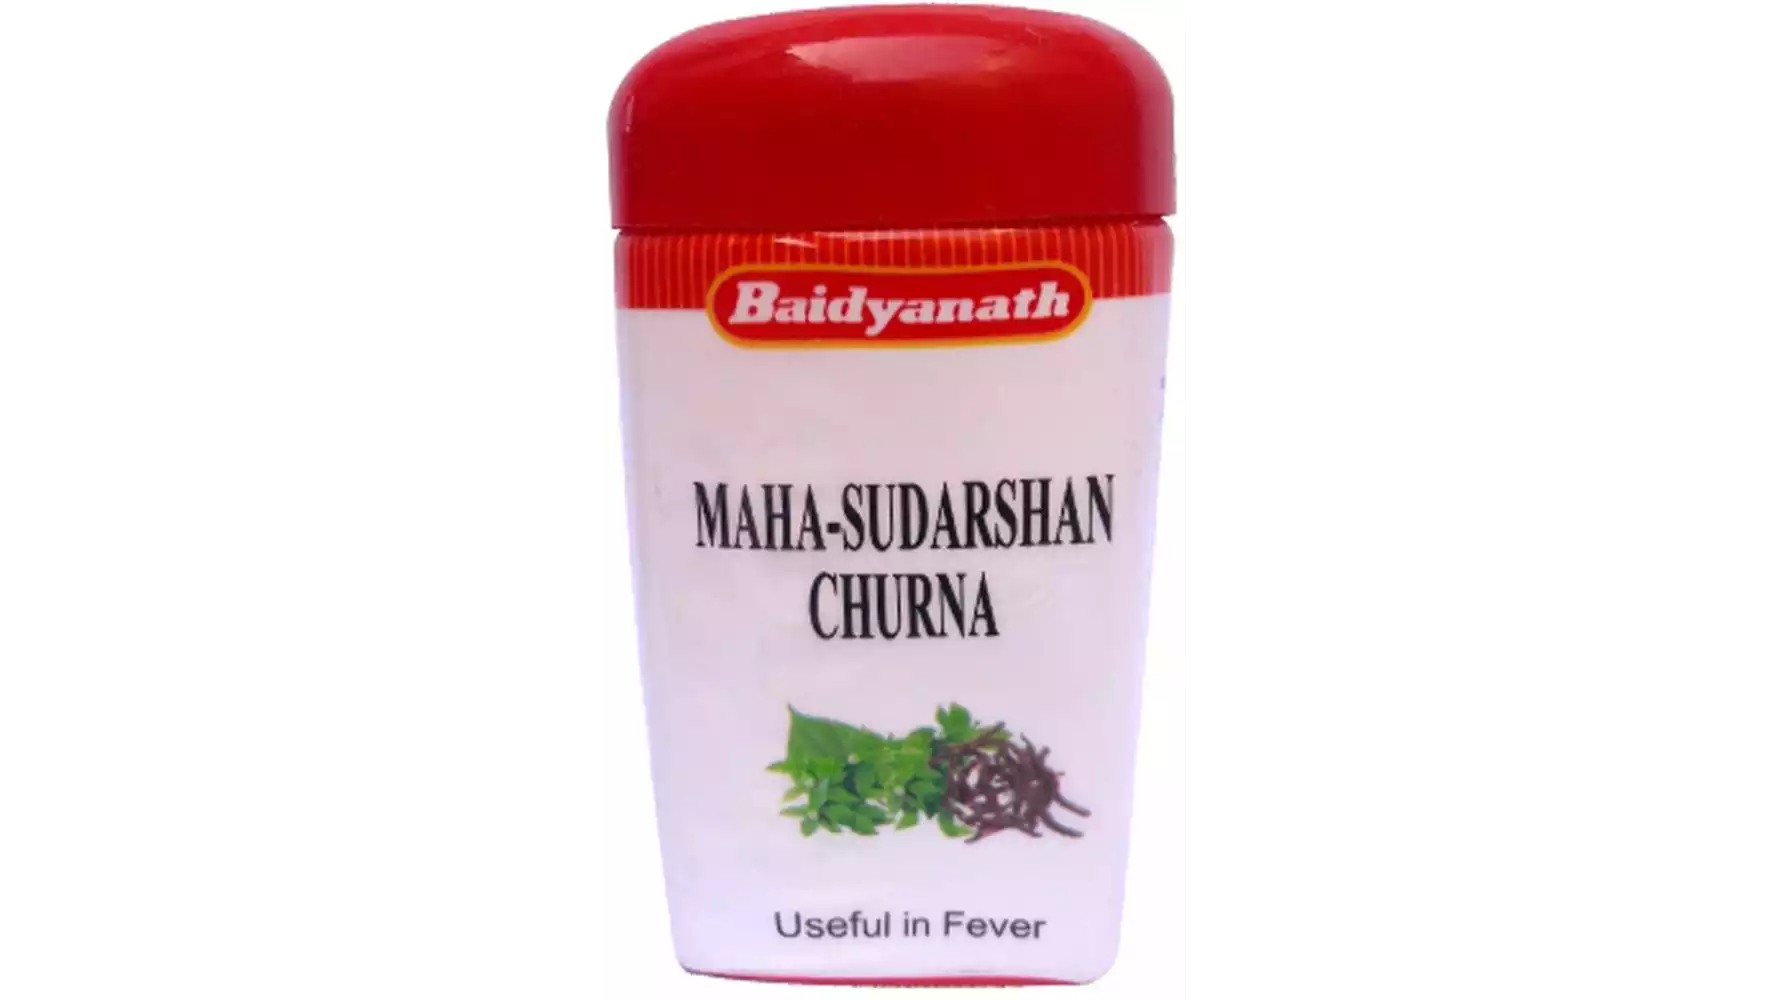 Baidyanath Mahasudarshan Churna (100g)